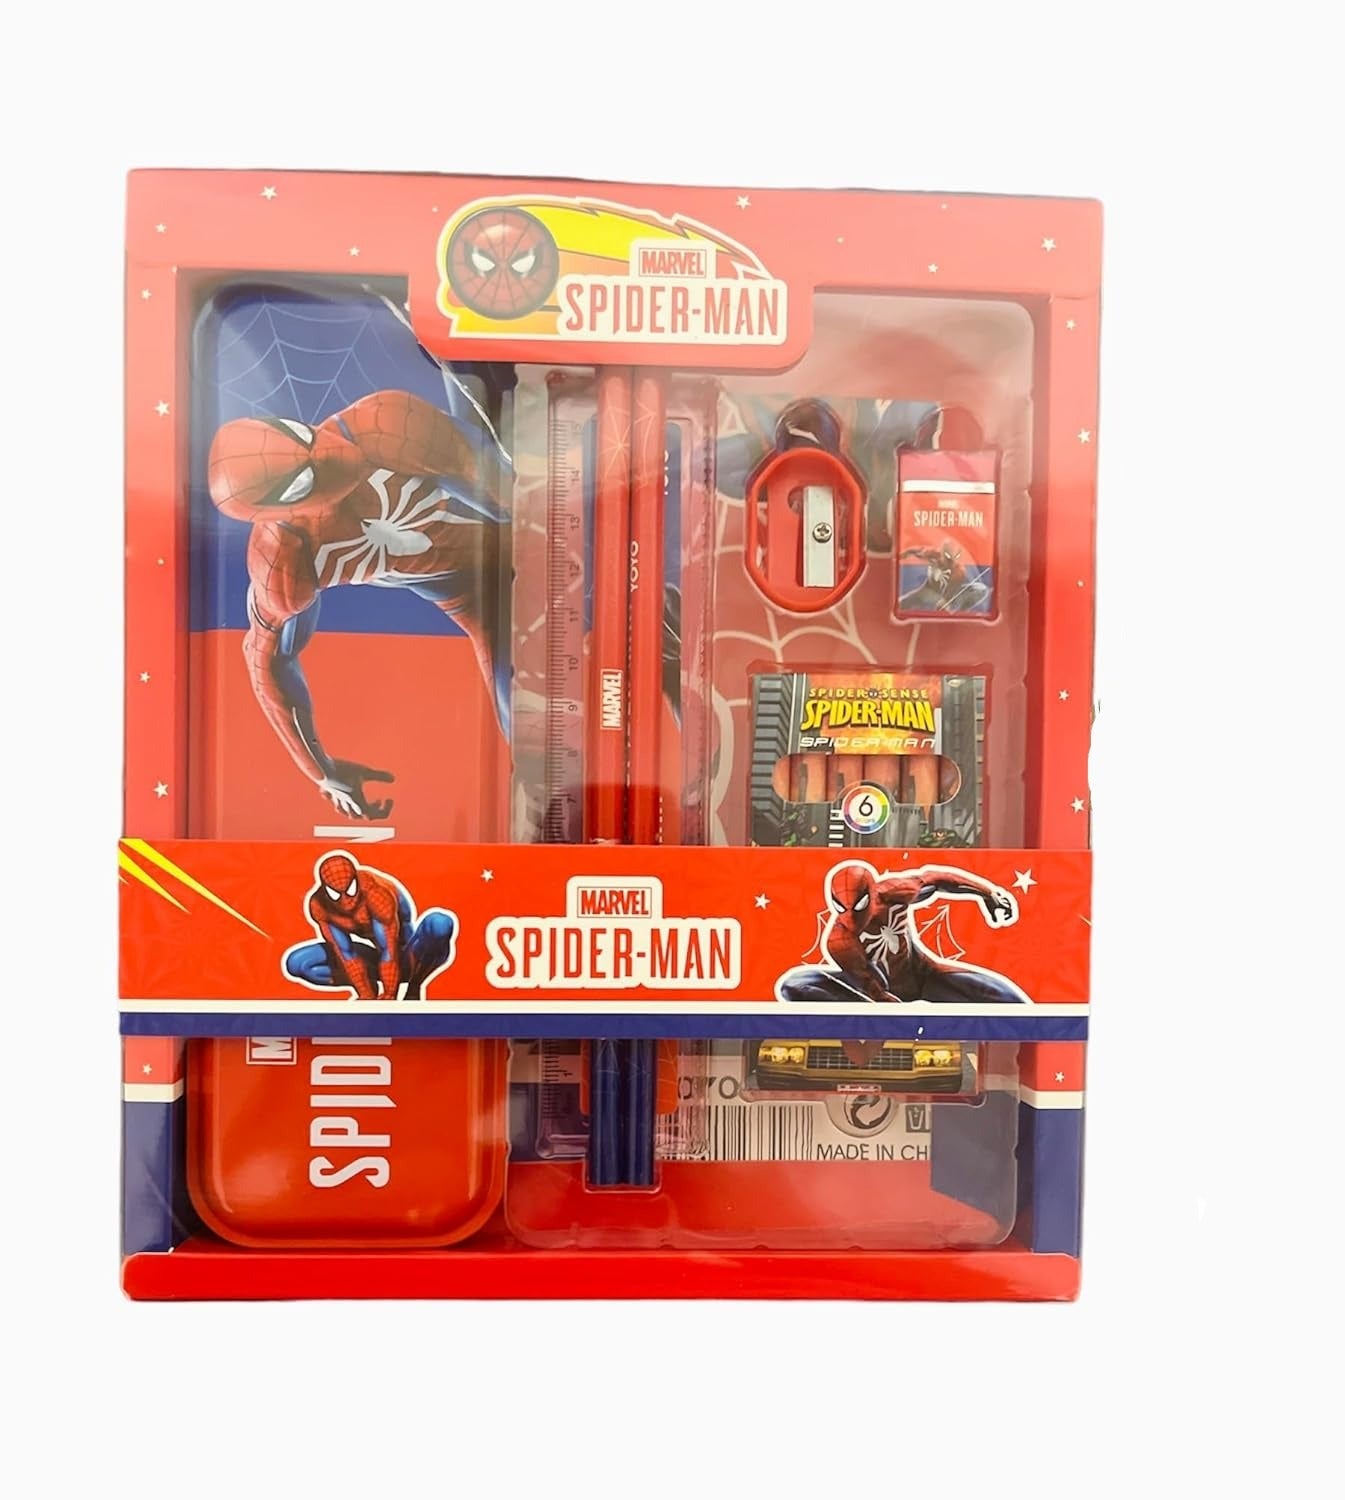 Spider-Man Stationery Gift Set